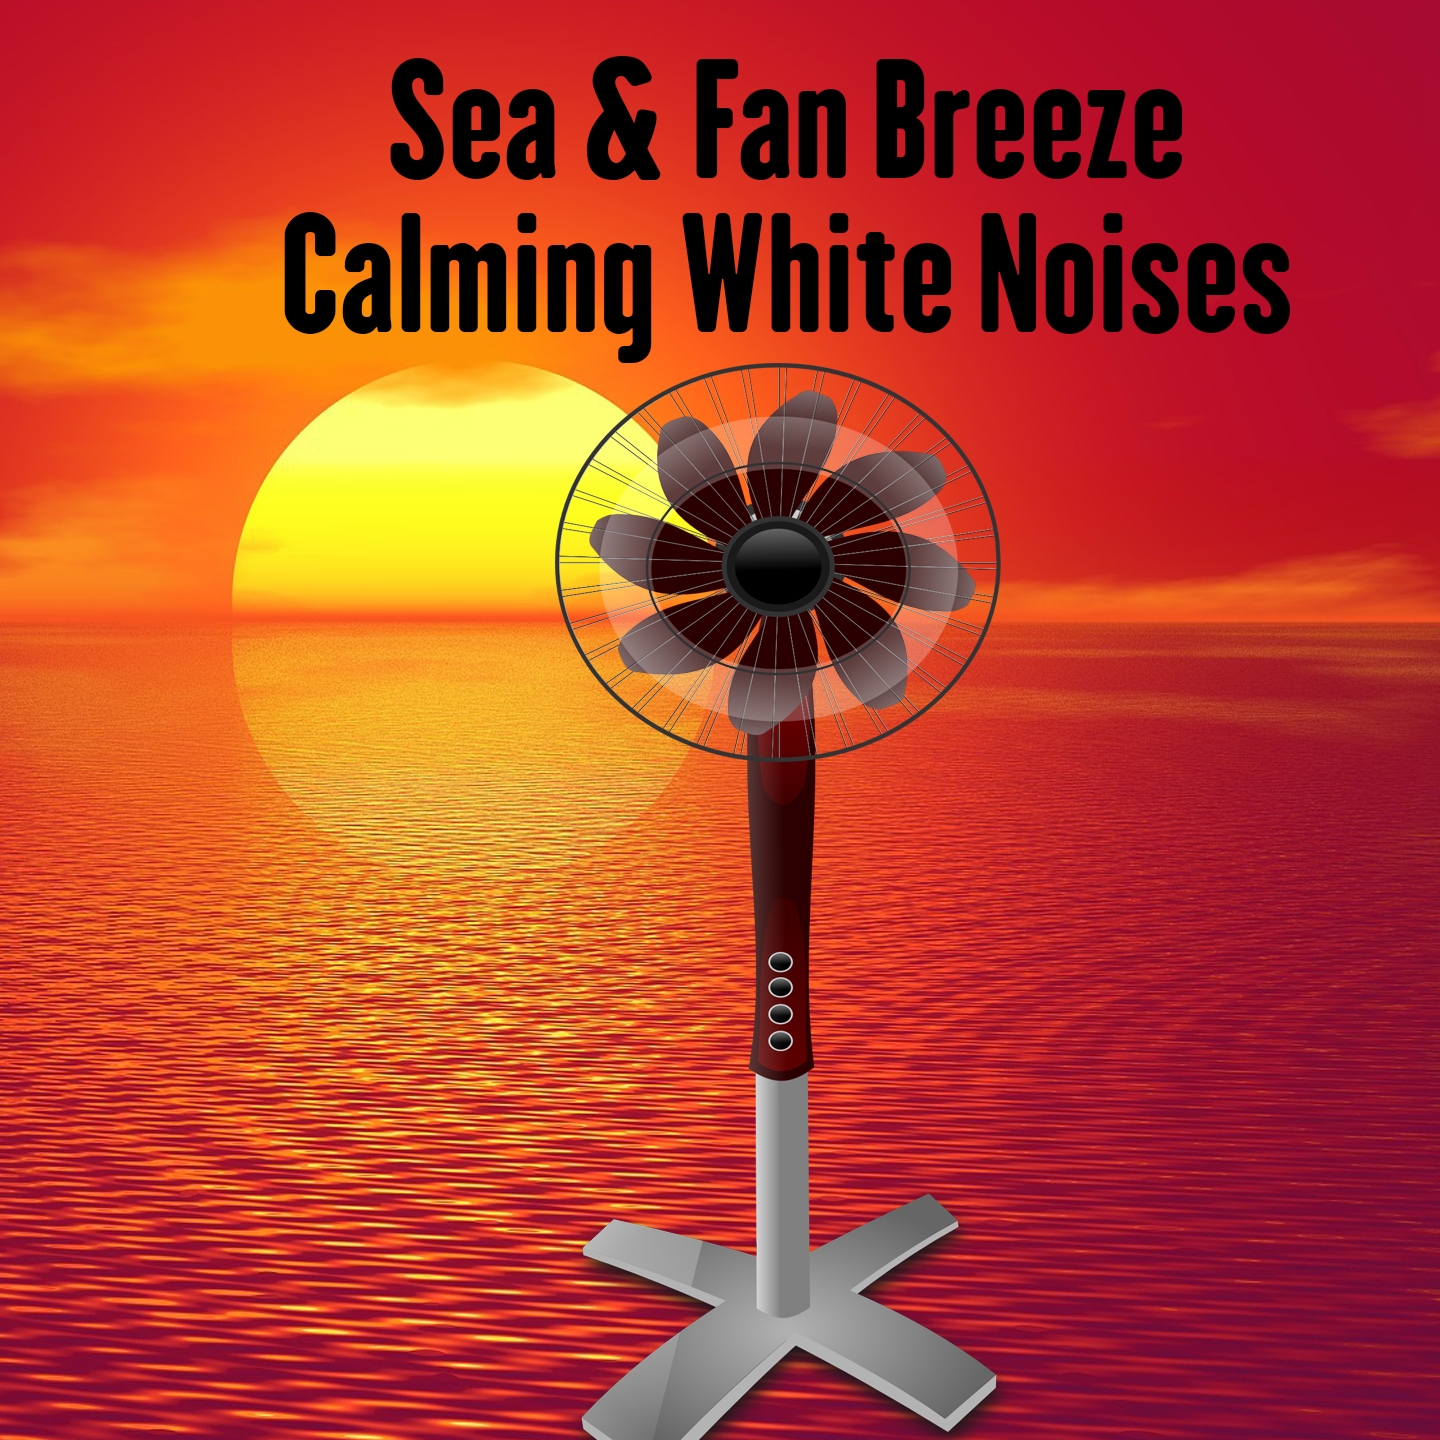 Sea & Fan Breeze Calming White Noises